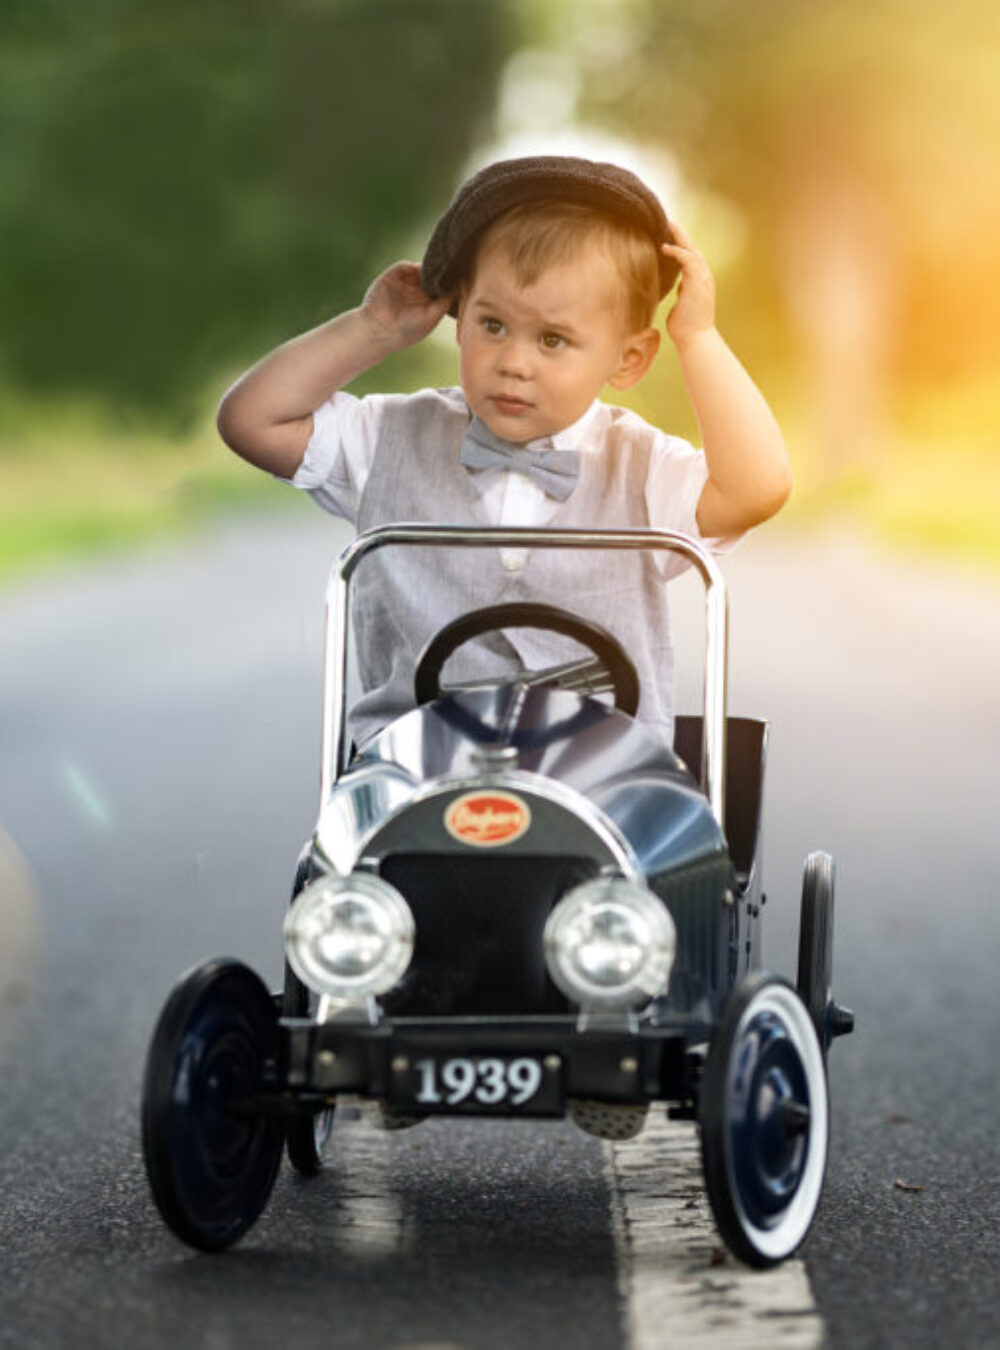 Kleiner Junge mit Anzug sitzt im Oldtimer Spielzeugauto.